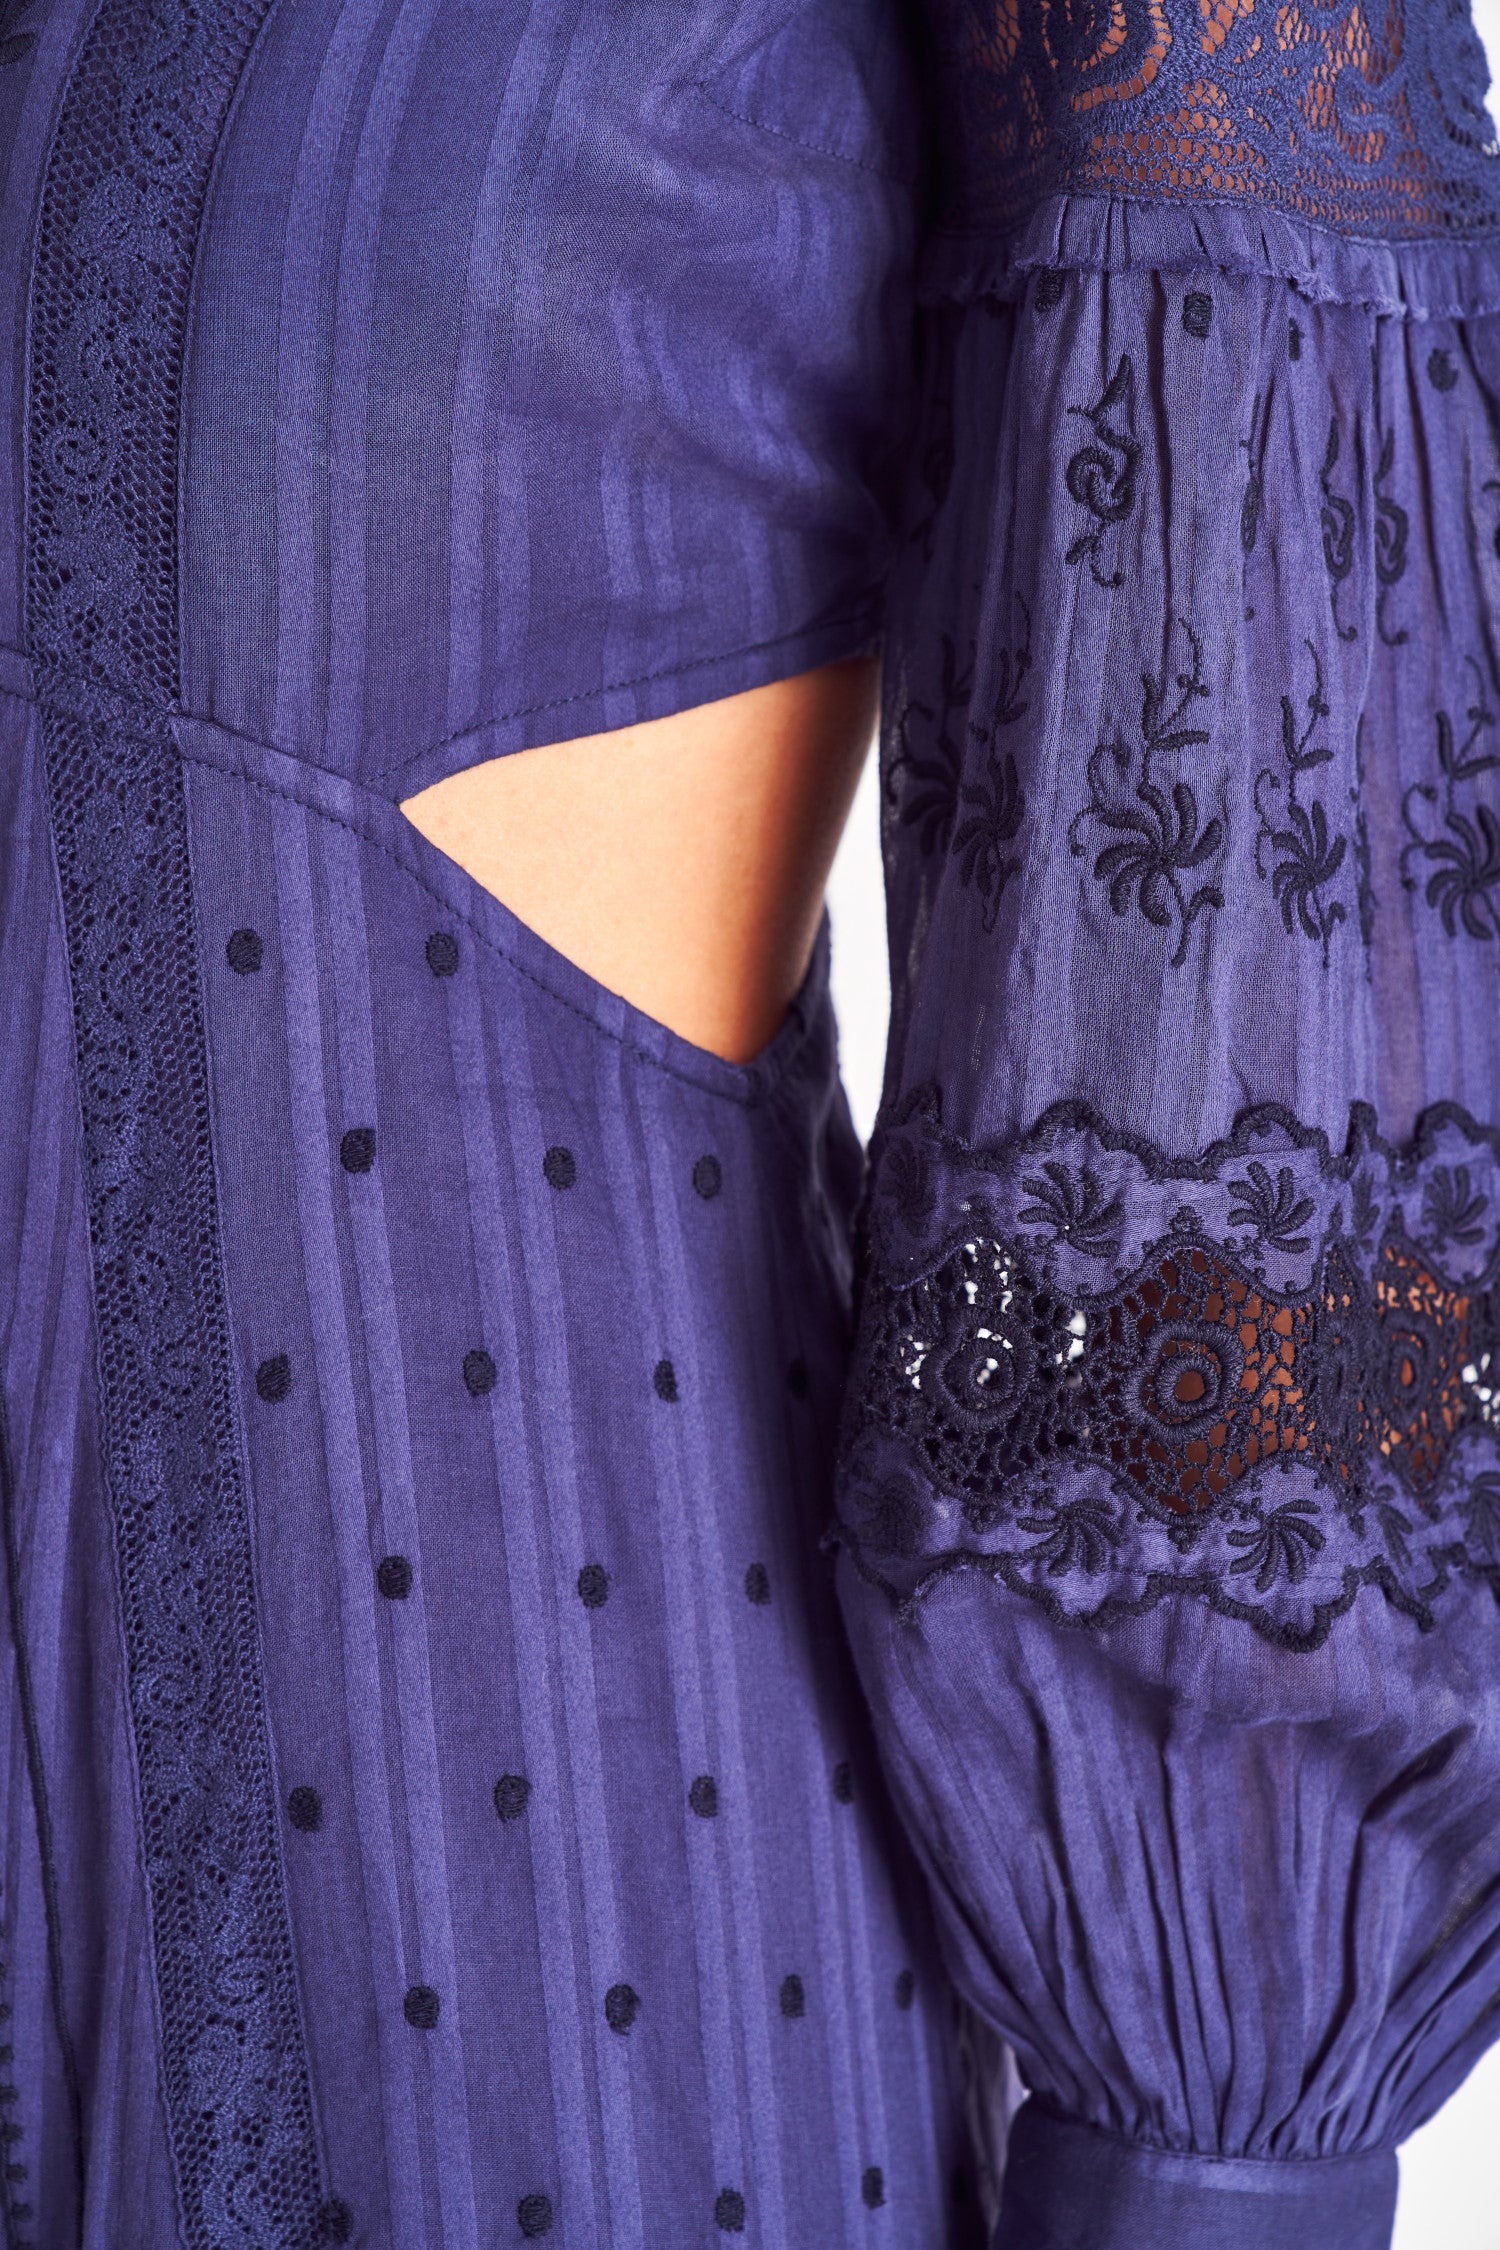 Dark blue v neck long sleeve maxi dress with cutouts.